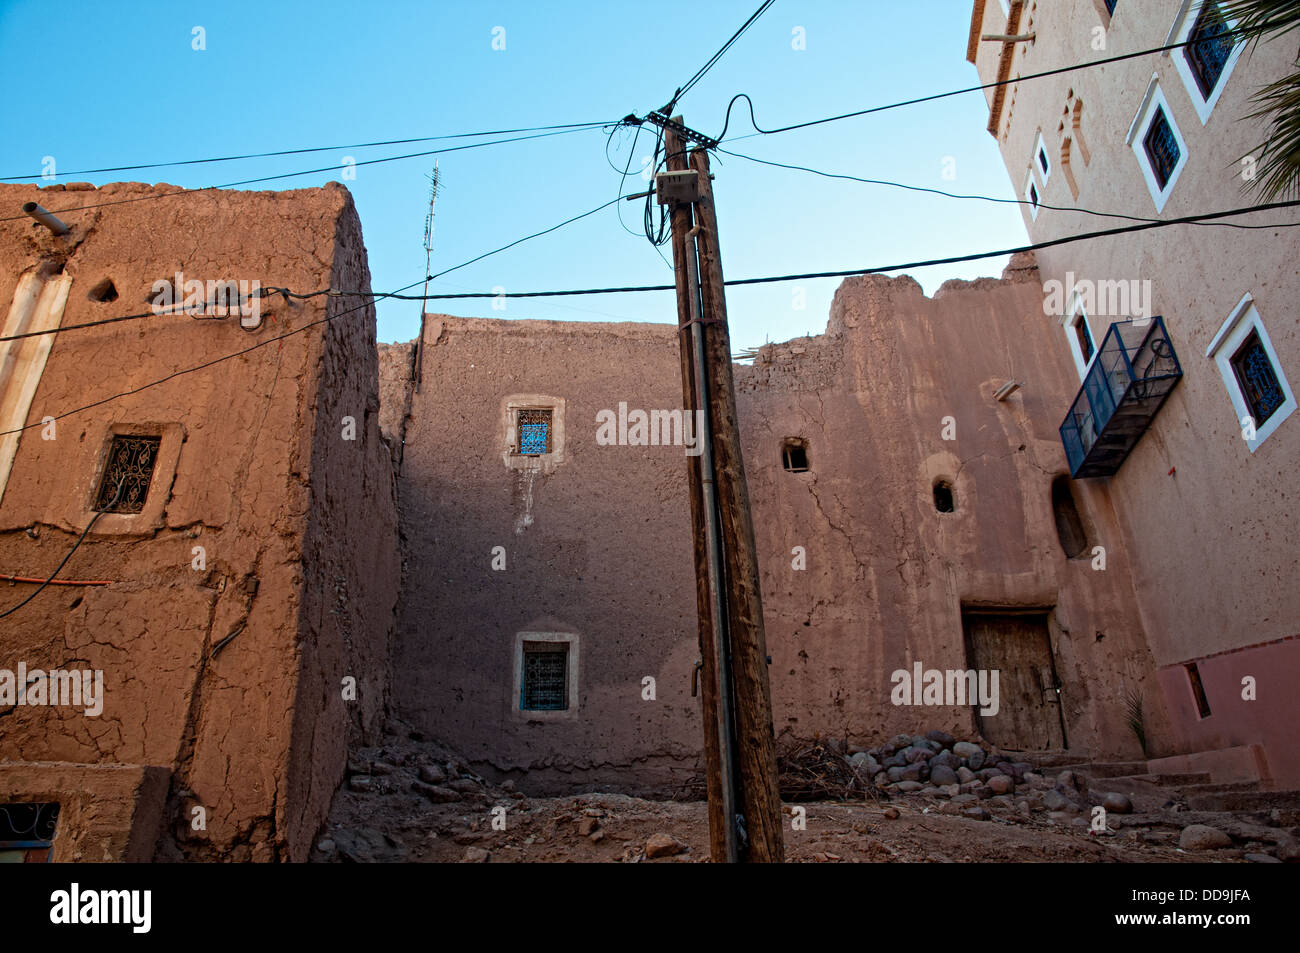 Maisons de brique de boue dans le mellah (quartier juif), Ouarzazate, Maroc Banque D'Images